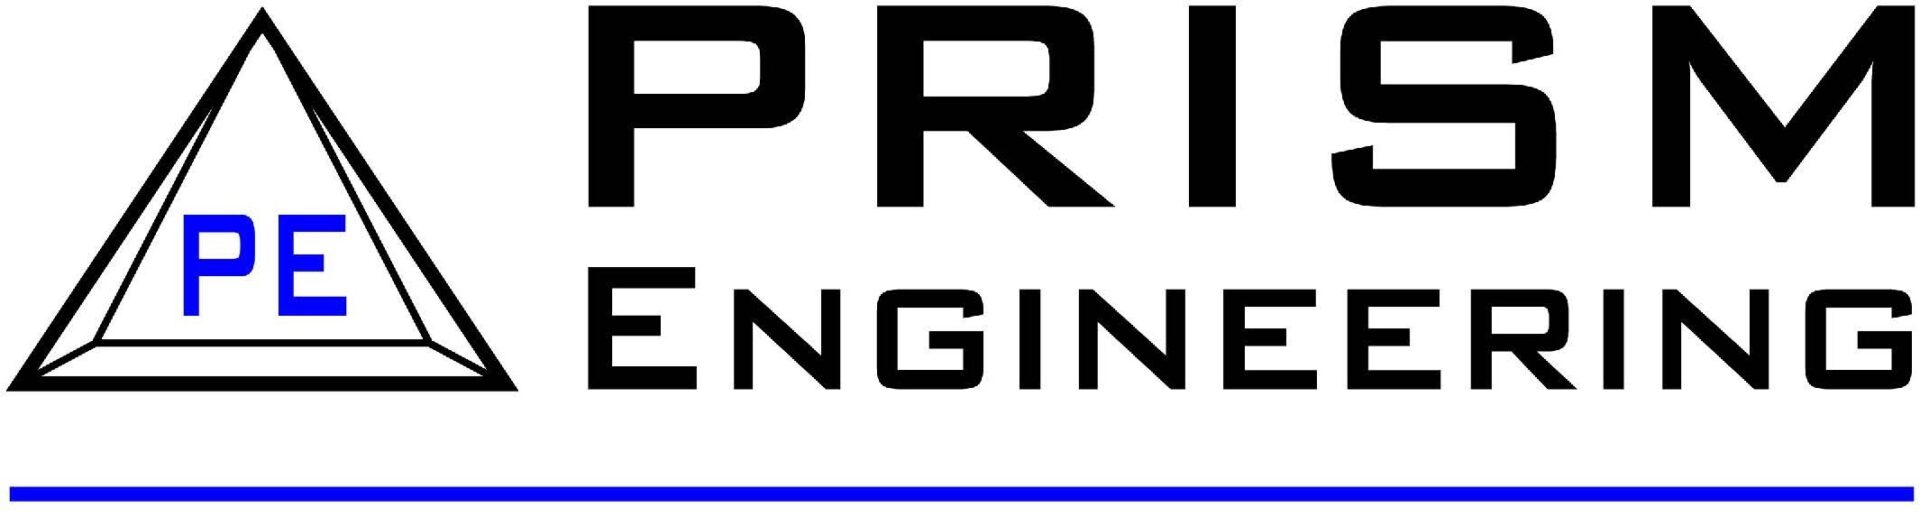 Prism Engineering Logo_2